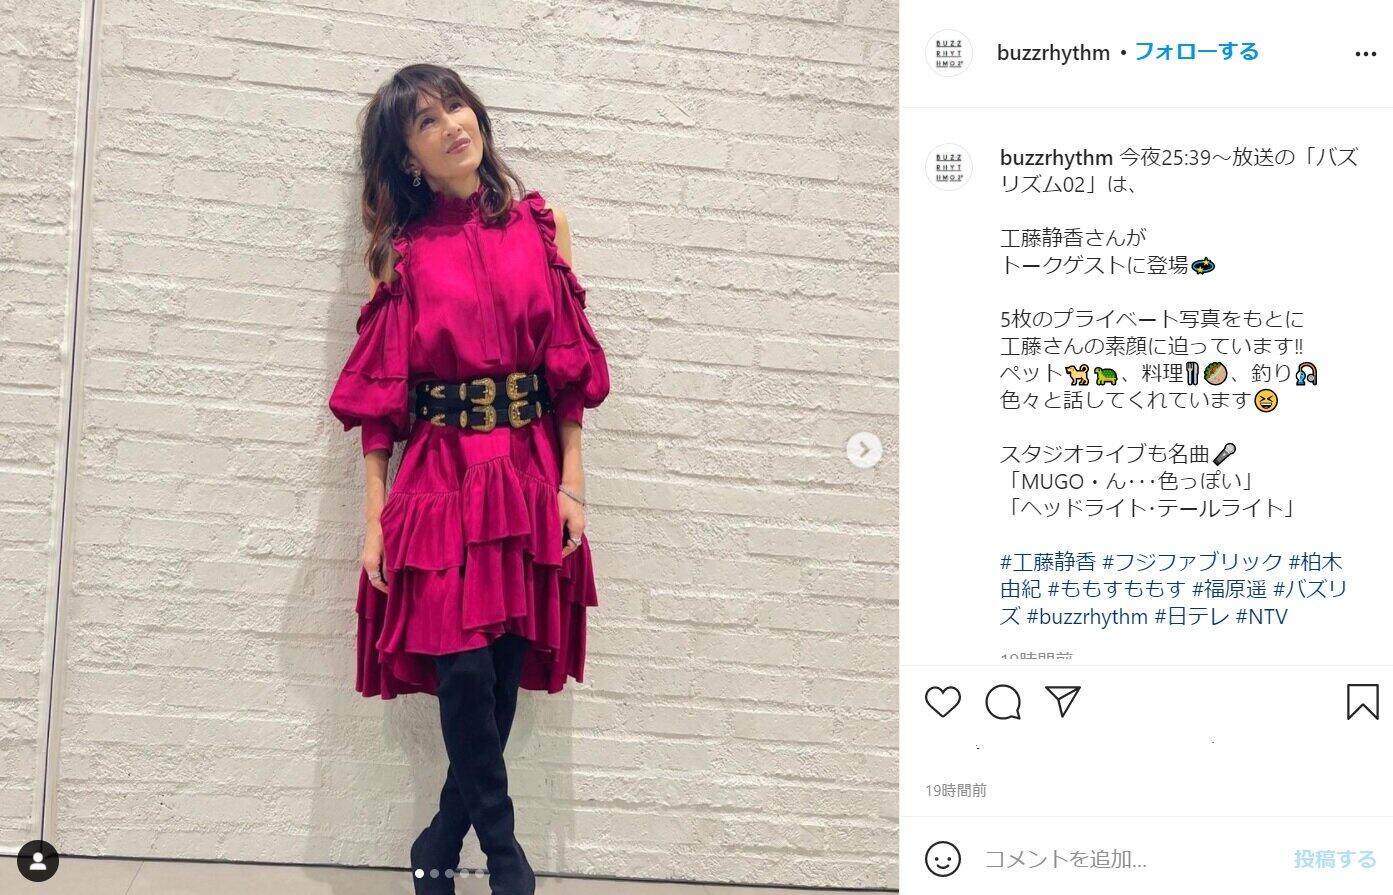 「バズリズム02」の公式インスタ（@buzzrhythm）が工藤静香さんのファッションを紹介した。